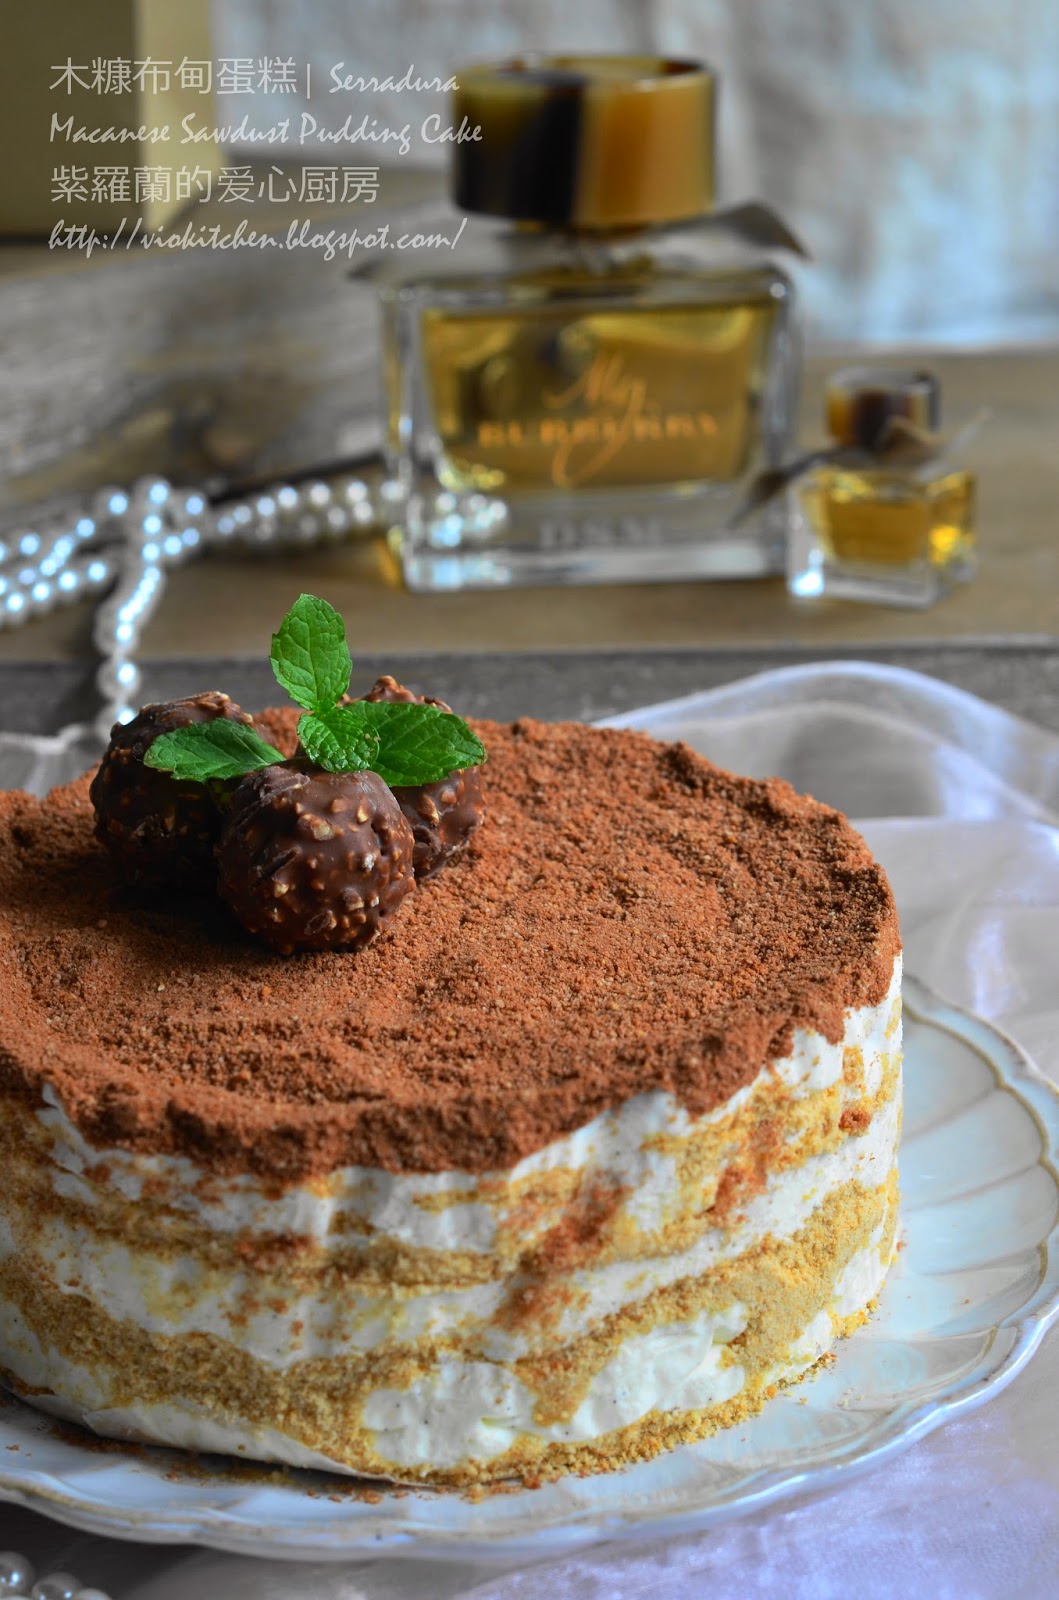 ღOreo Sawdust Pudding Cake 木糠布甸蛋糕ღ – 大马生活资讯网 The Malaysian Recipe